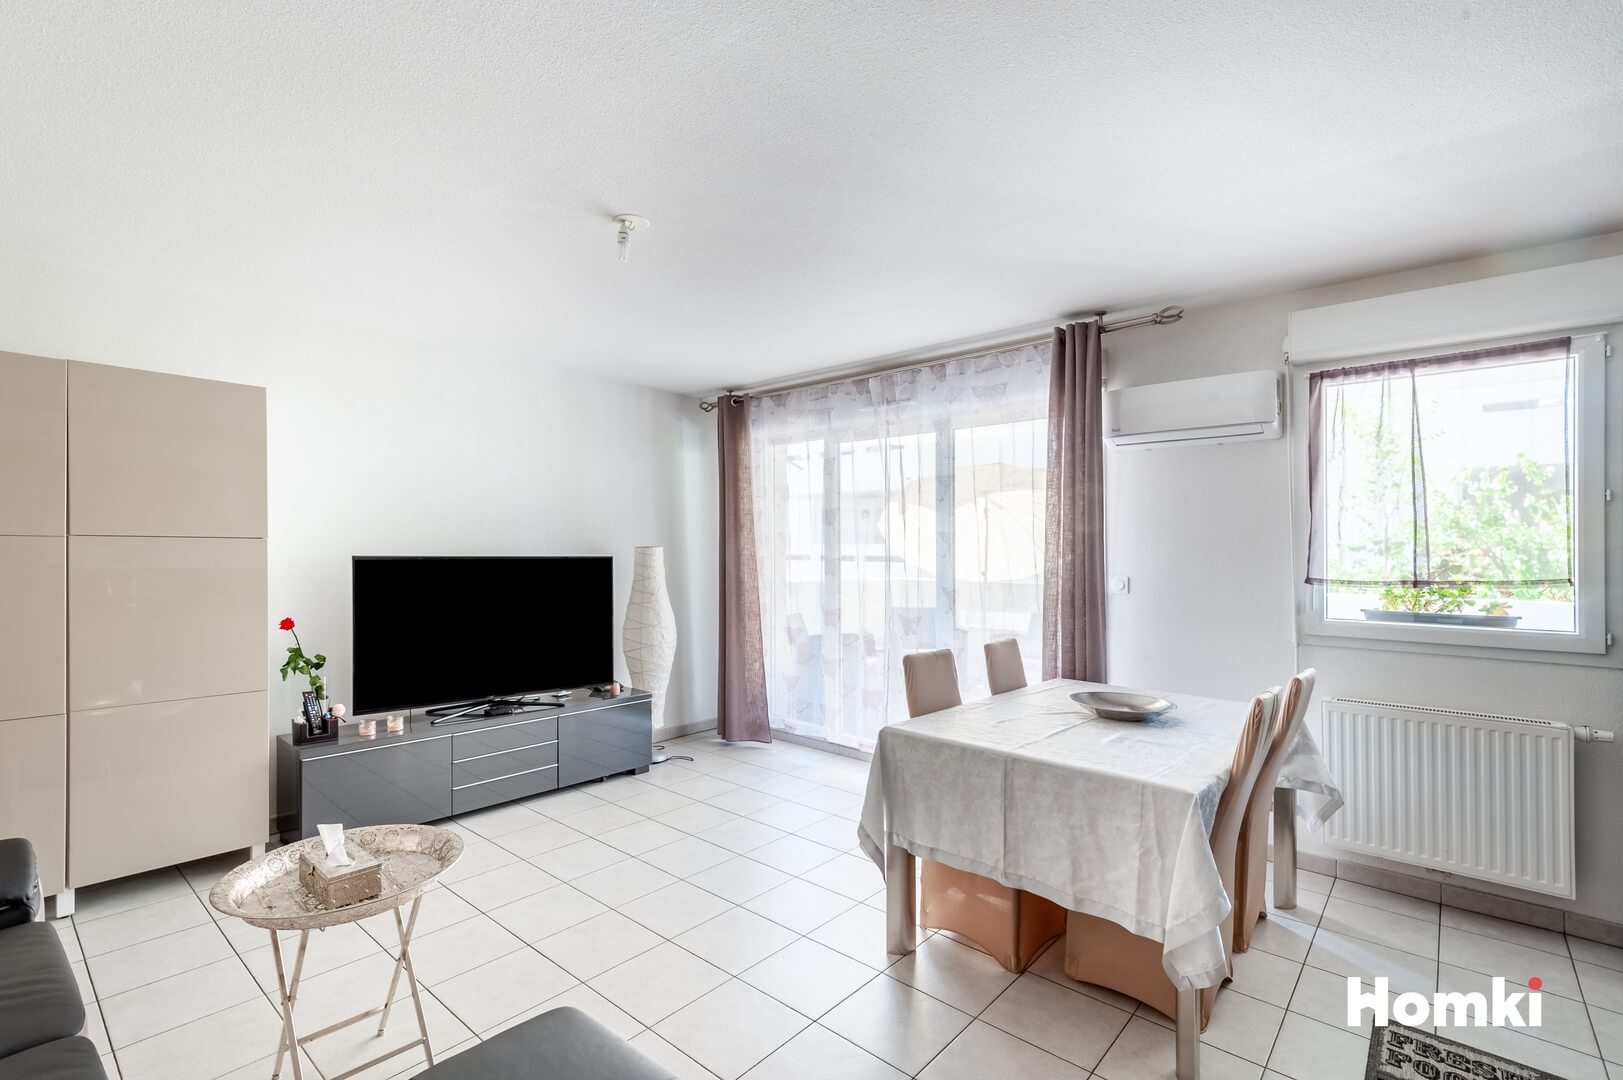 Homki - Vente Appartement  de 62.0 m² à Marseille 13014